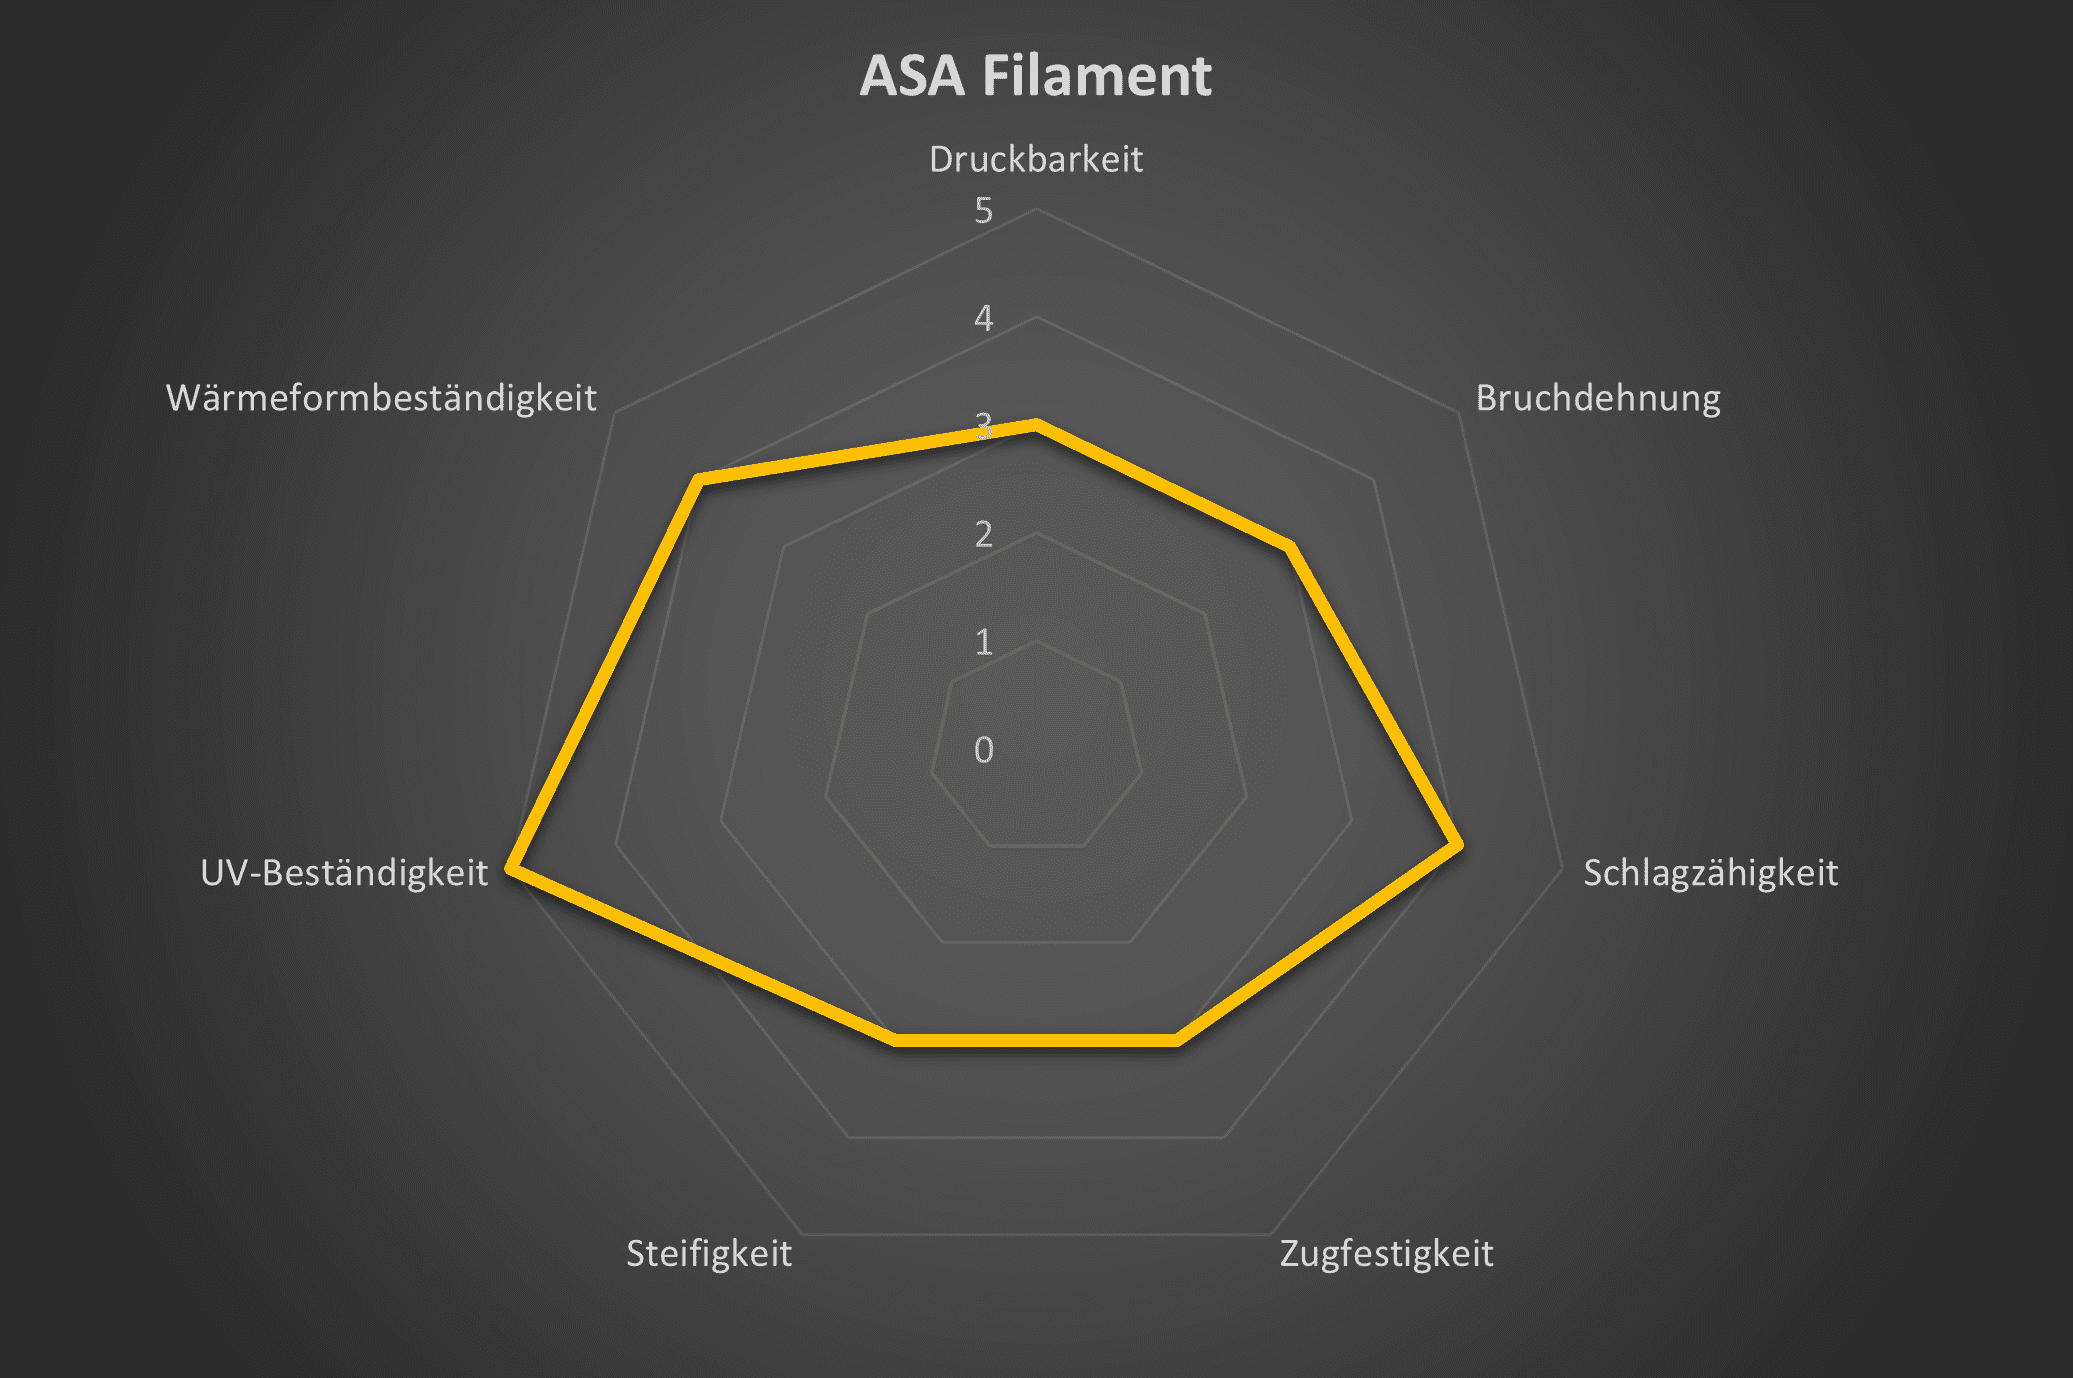 Spinnendiagramm mit den technischen eigenschaften von ASA Filament